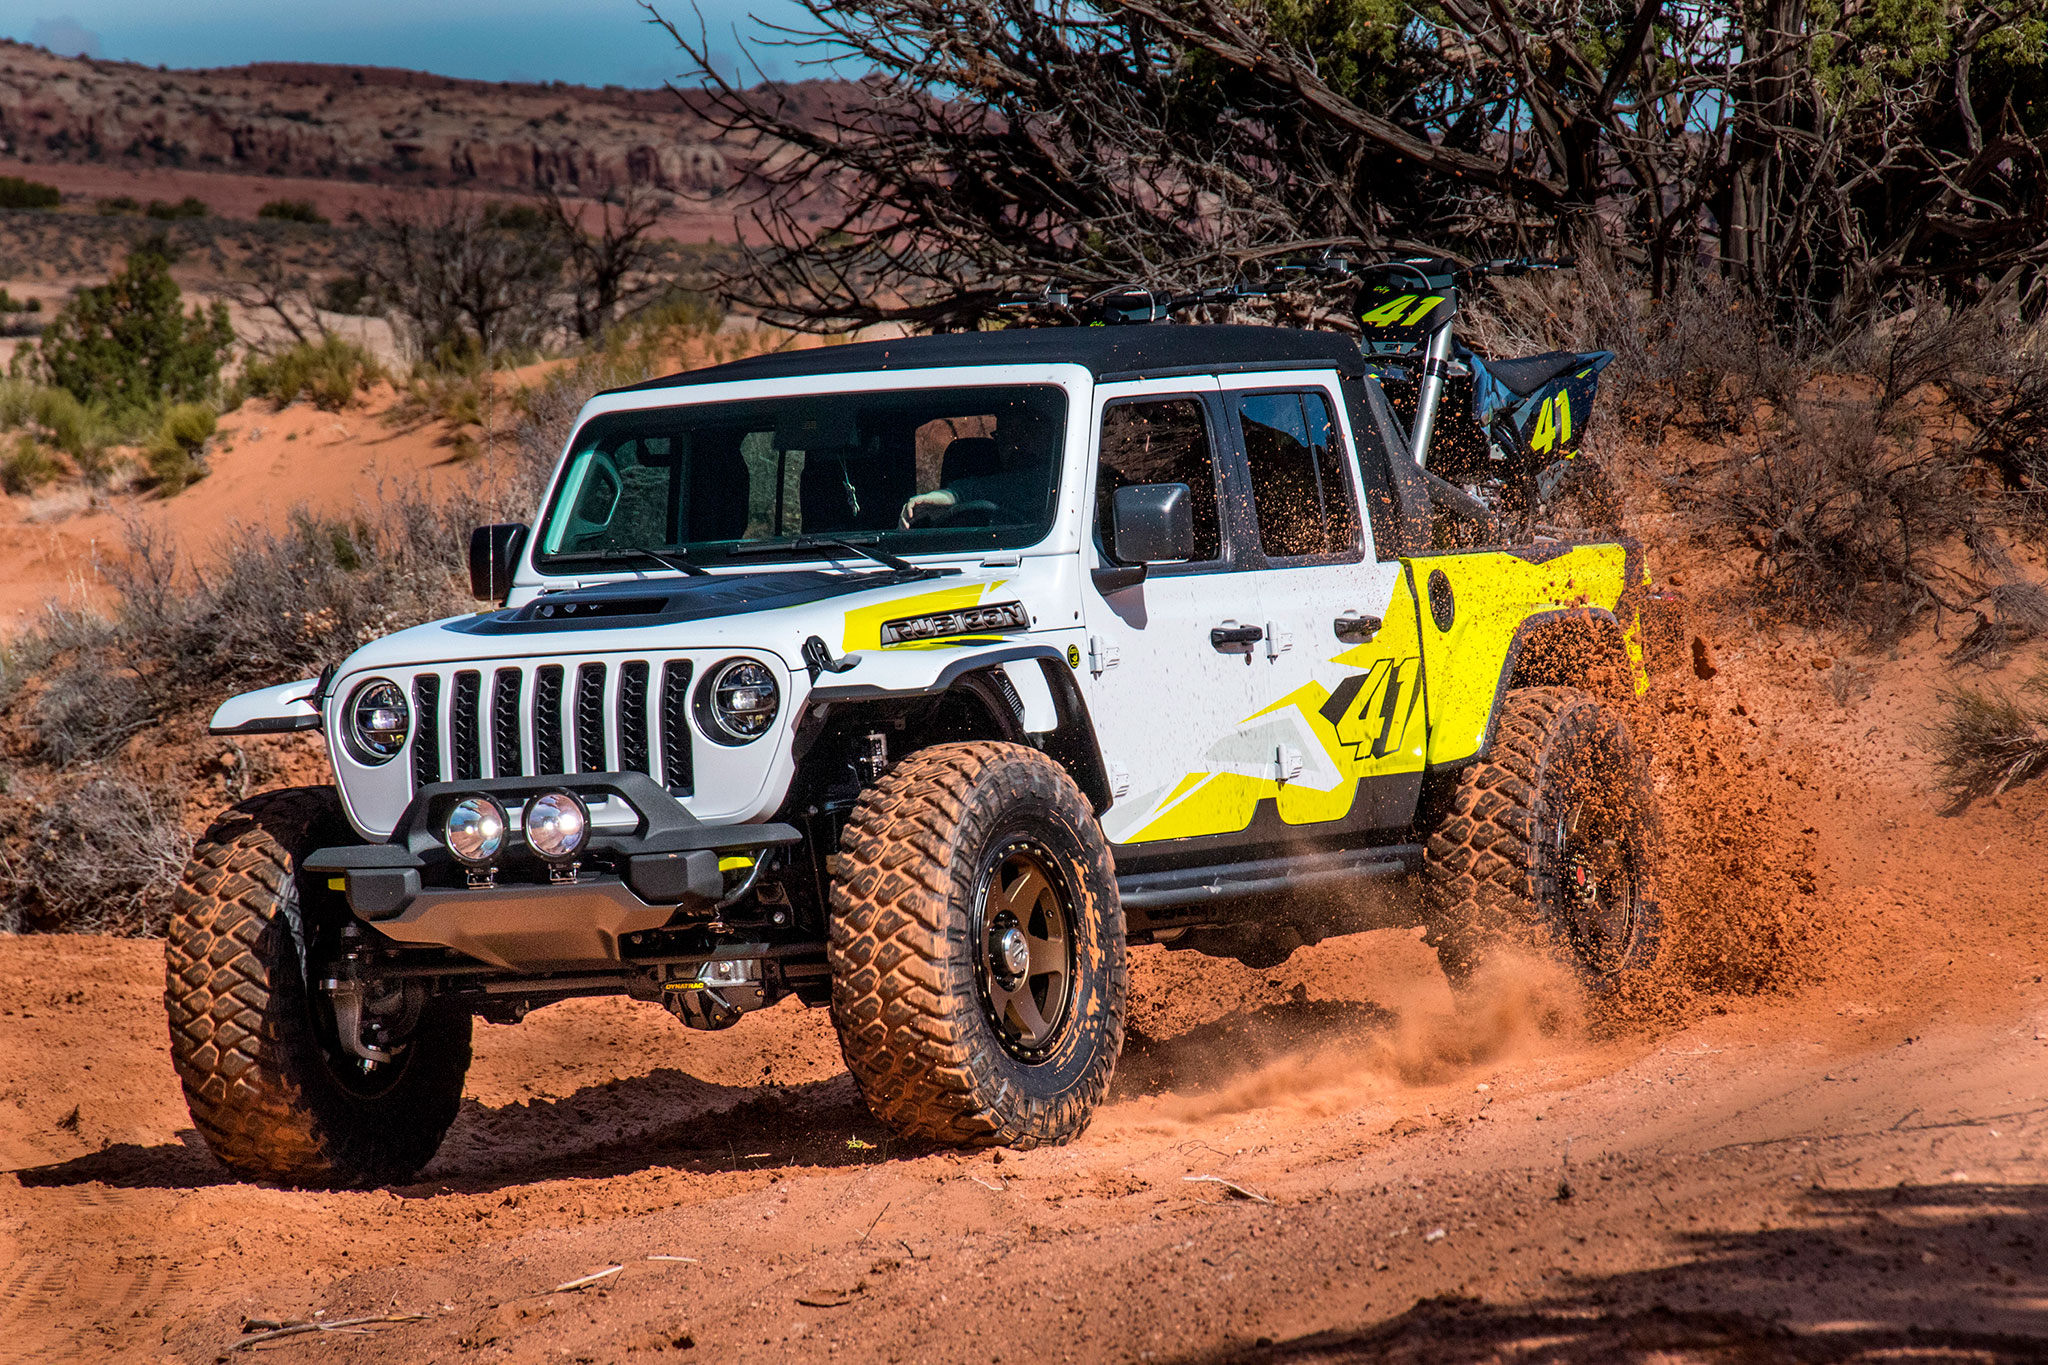 2019 Jeep Gladiator Flabill pour aller jusqu'au bout de la route - Moab Easter Jeep Safari.